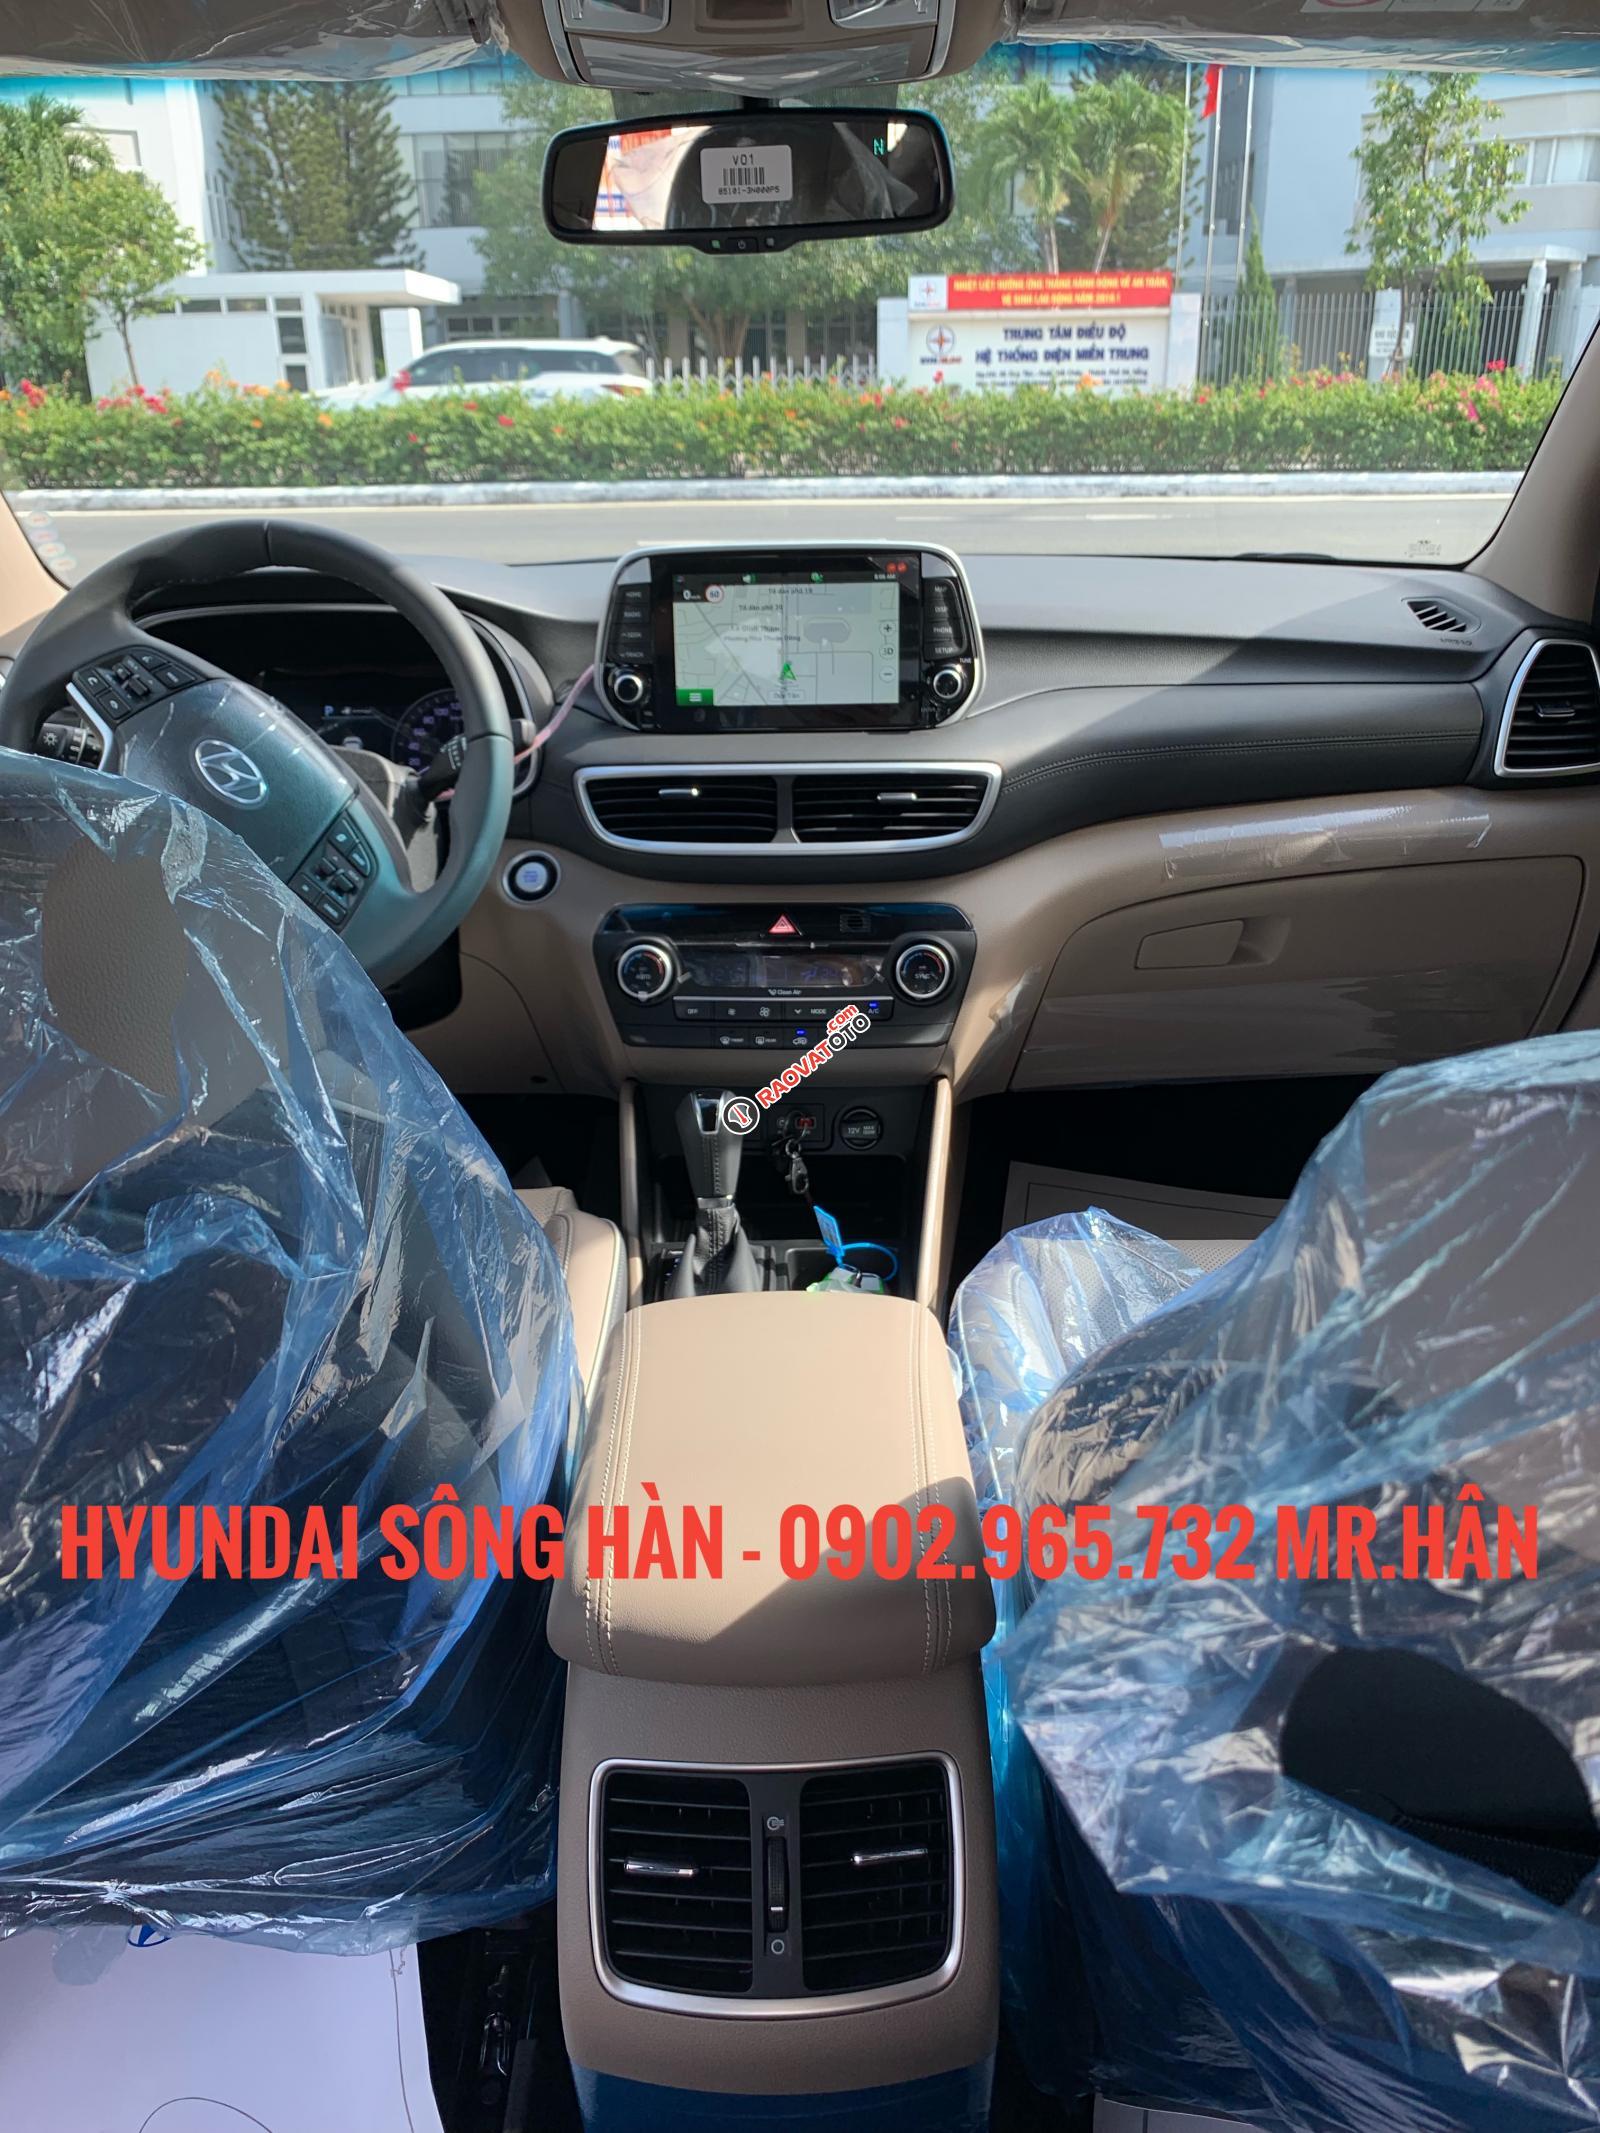 Bán xe Hyundai Tucson đời 2019, màu đỏ - giao ngay, hỗ trợ vay vốn 80% LH: 0902.965.732 Hữu Hân-7